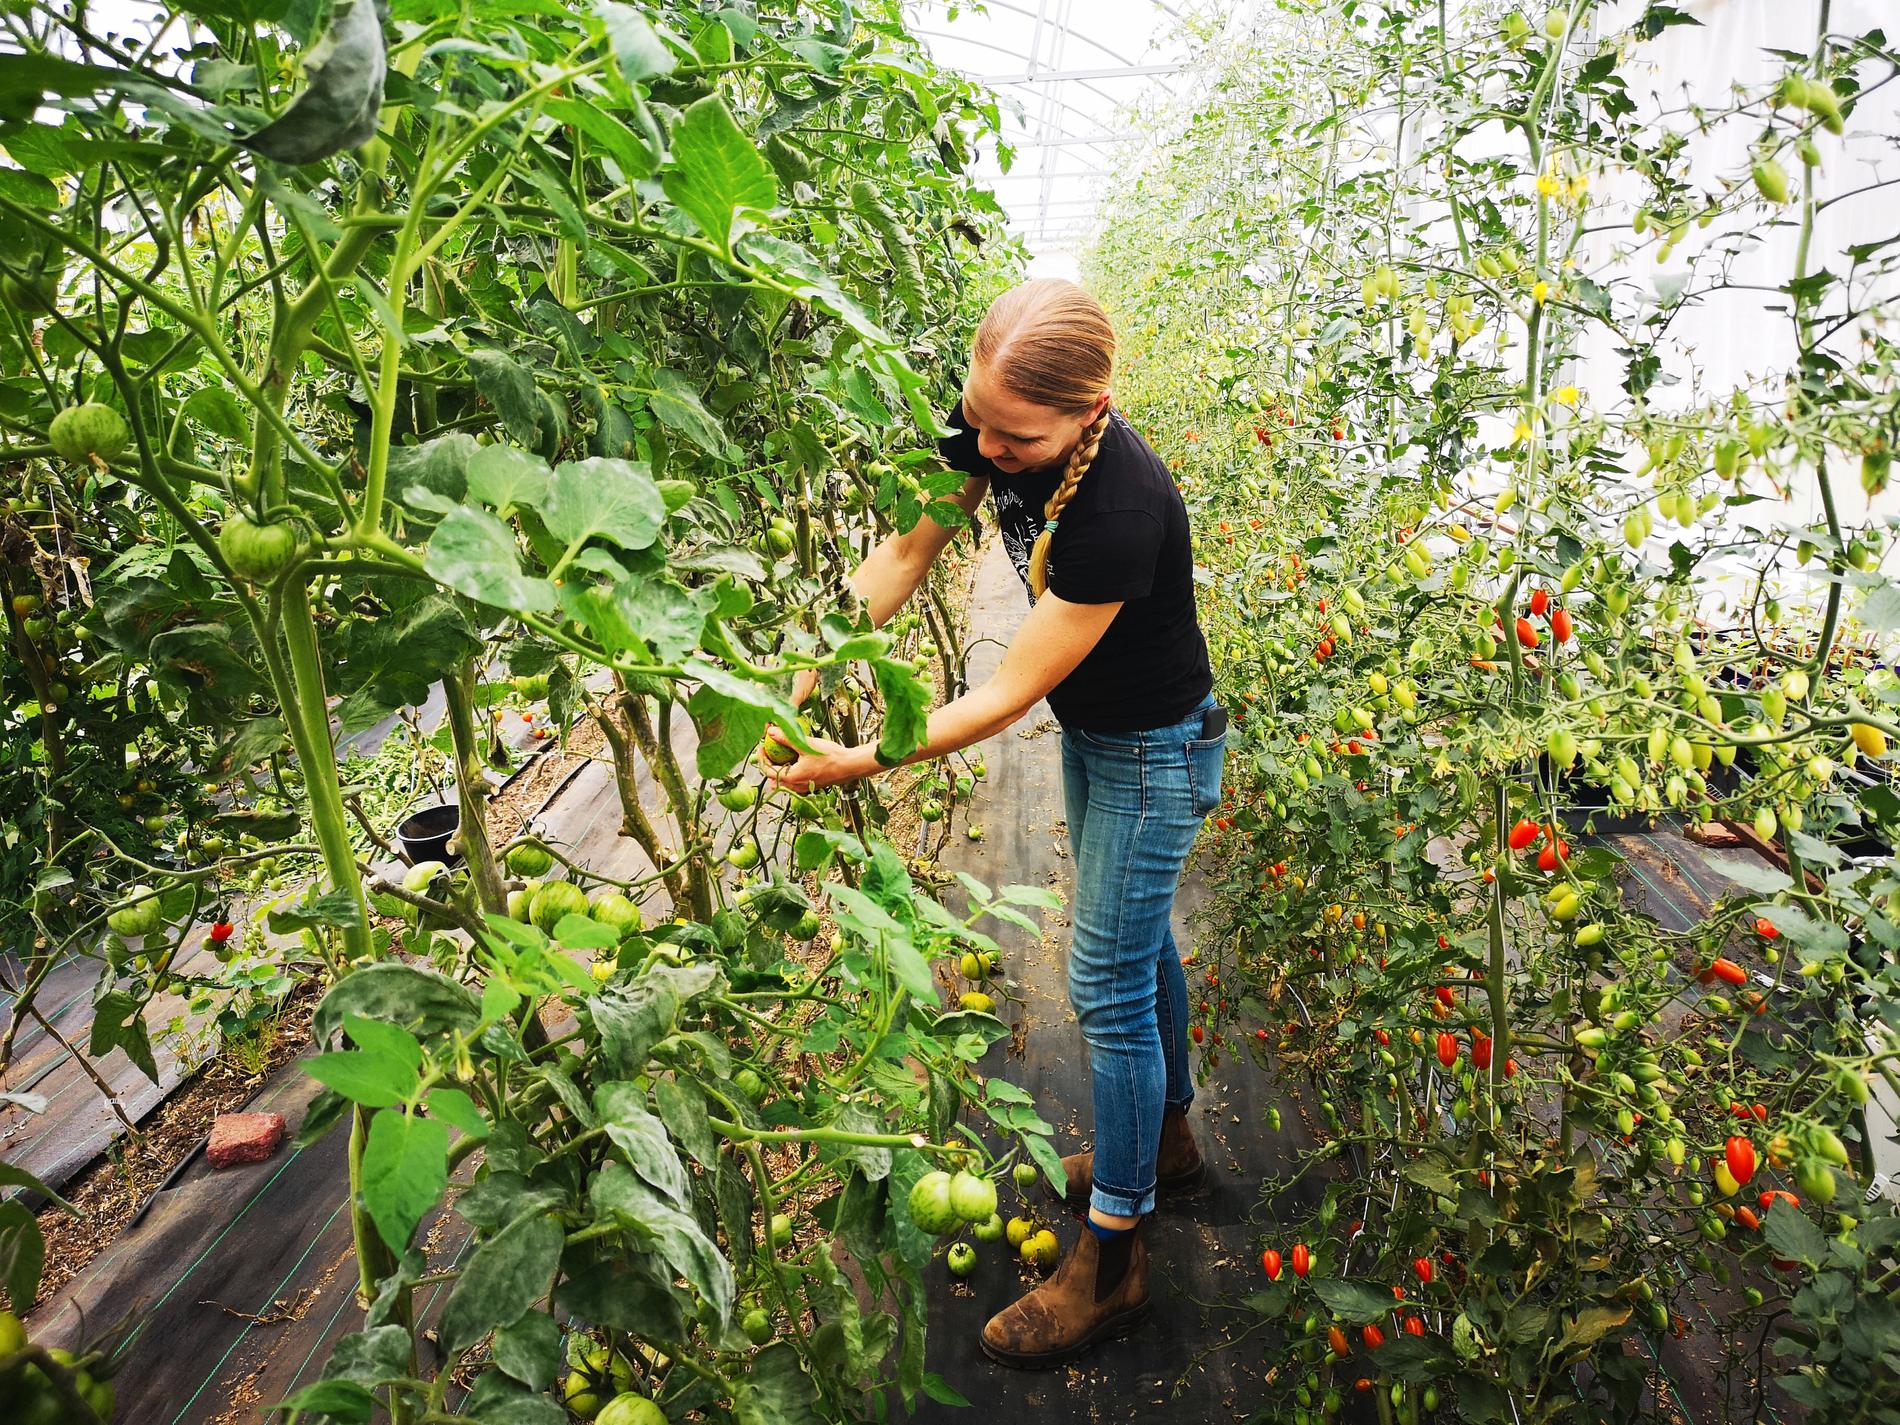 När restauranger i drabbade områden får färre besökare sjunker efterfrågan på Piccolo Farms varor. "Vi hade hundra kilo tomater här i förra veckan som vi inte kunde sälja", säger Lizzie Buscaino.